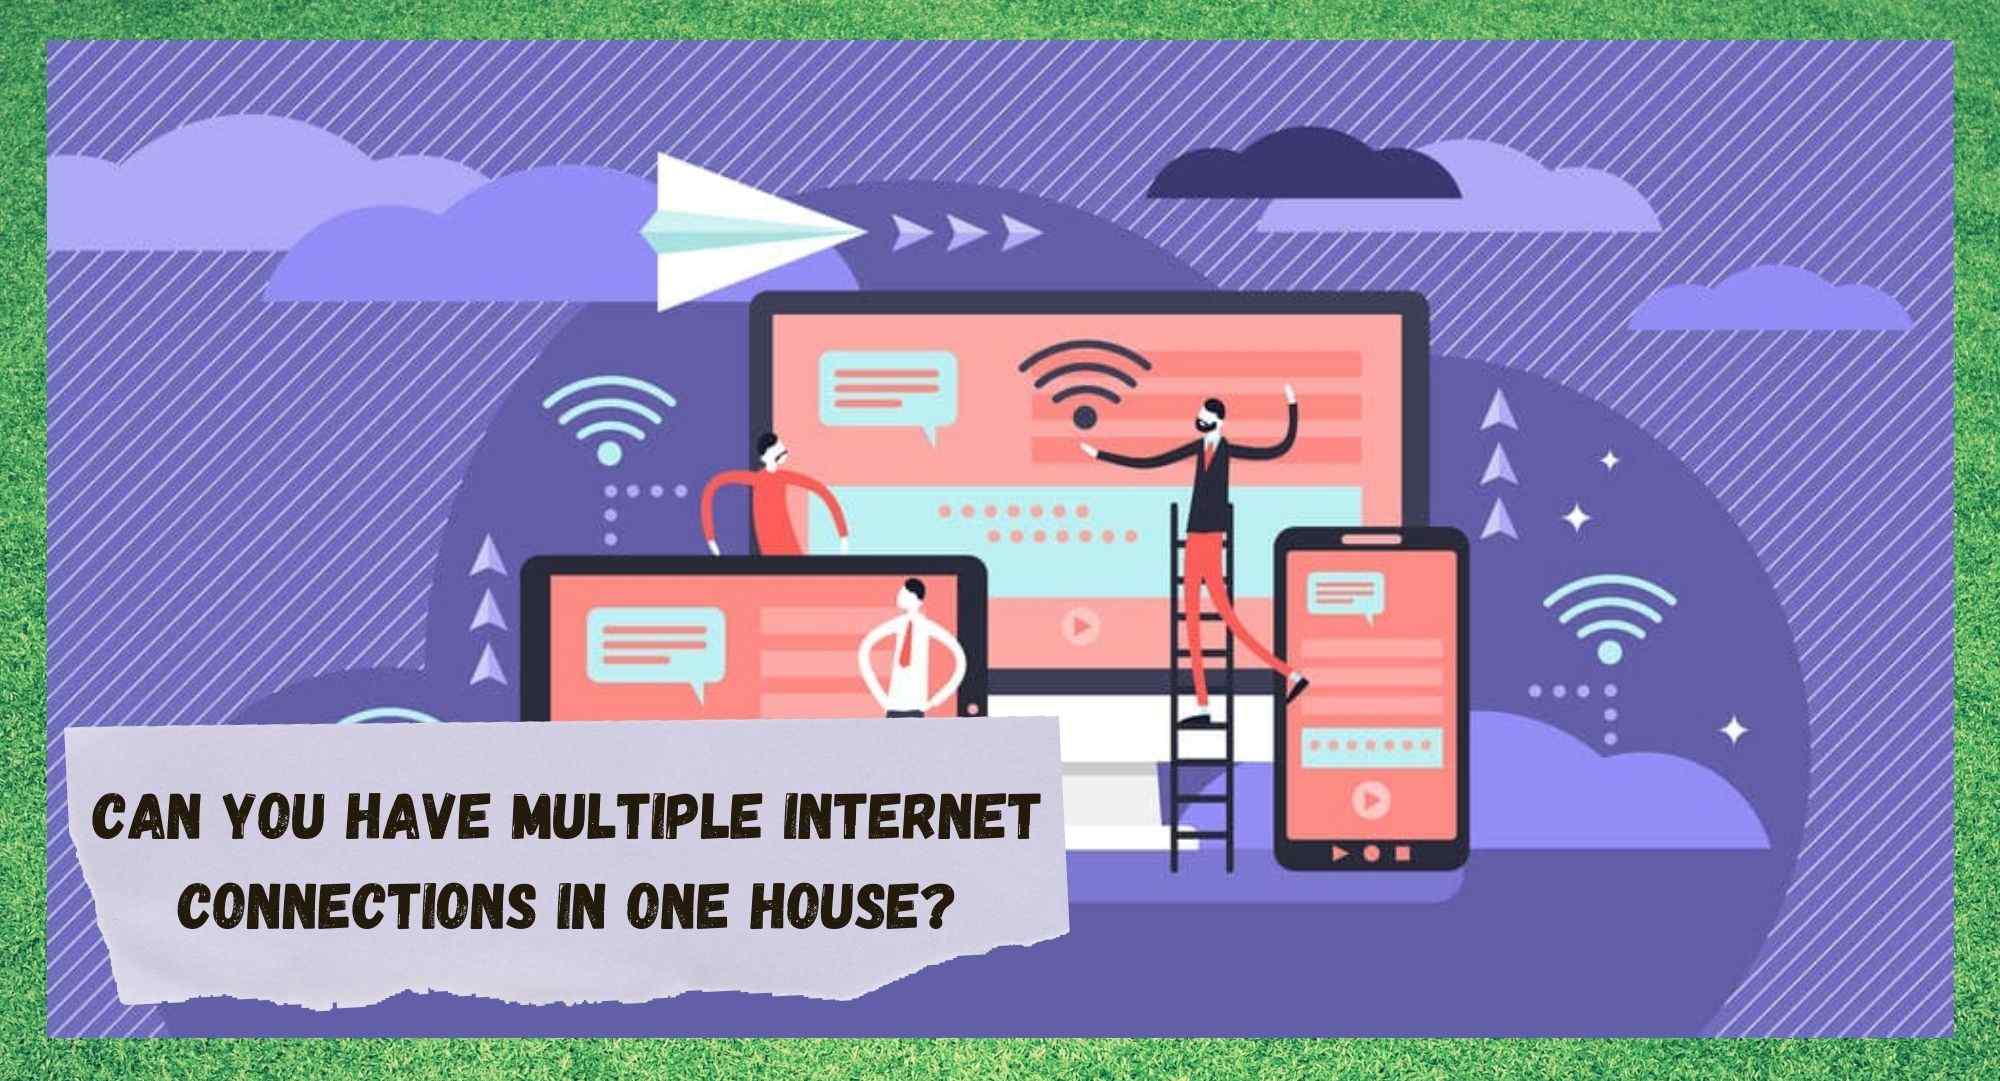 Та нэг байшинд олон интернет холболттой байж чадах уу?